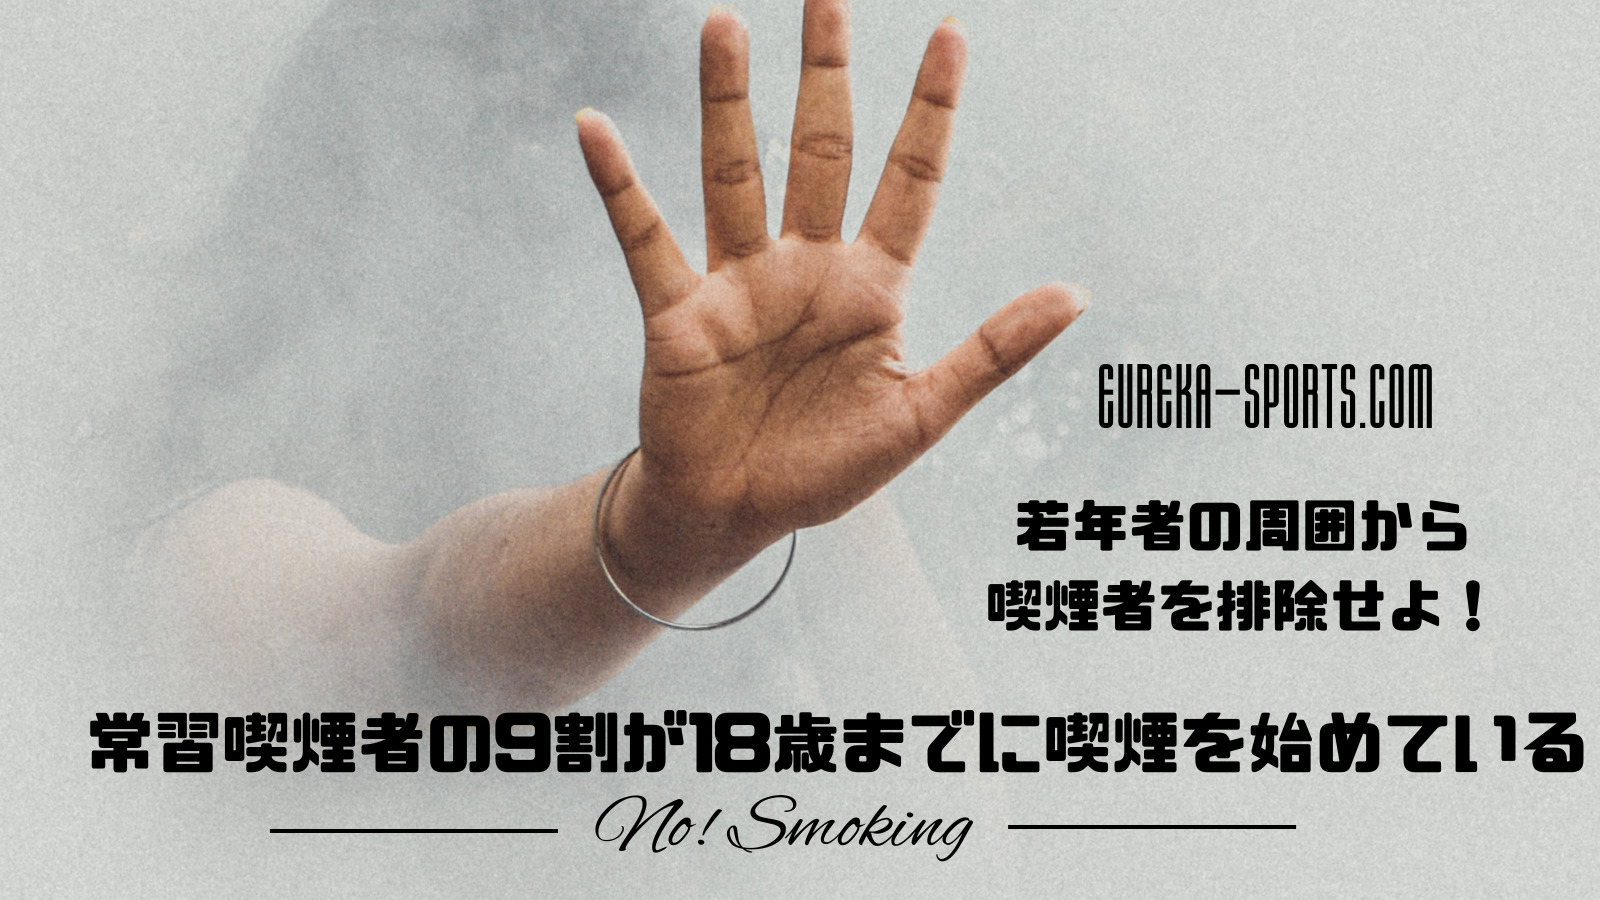 若年者の周囲から喫煙者を排除せよ！常習喫煙者の9割は18歳までに喫煙を始めている